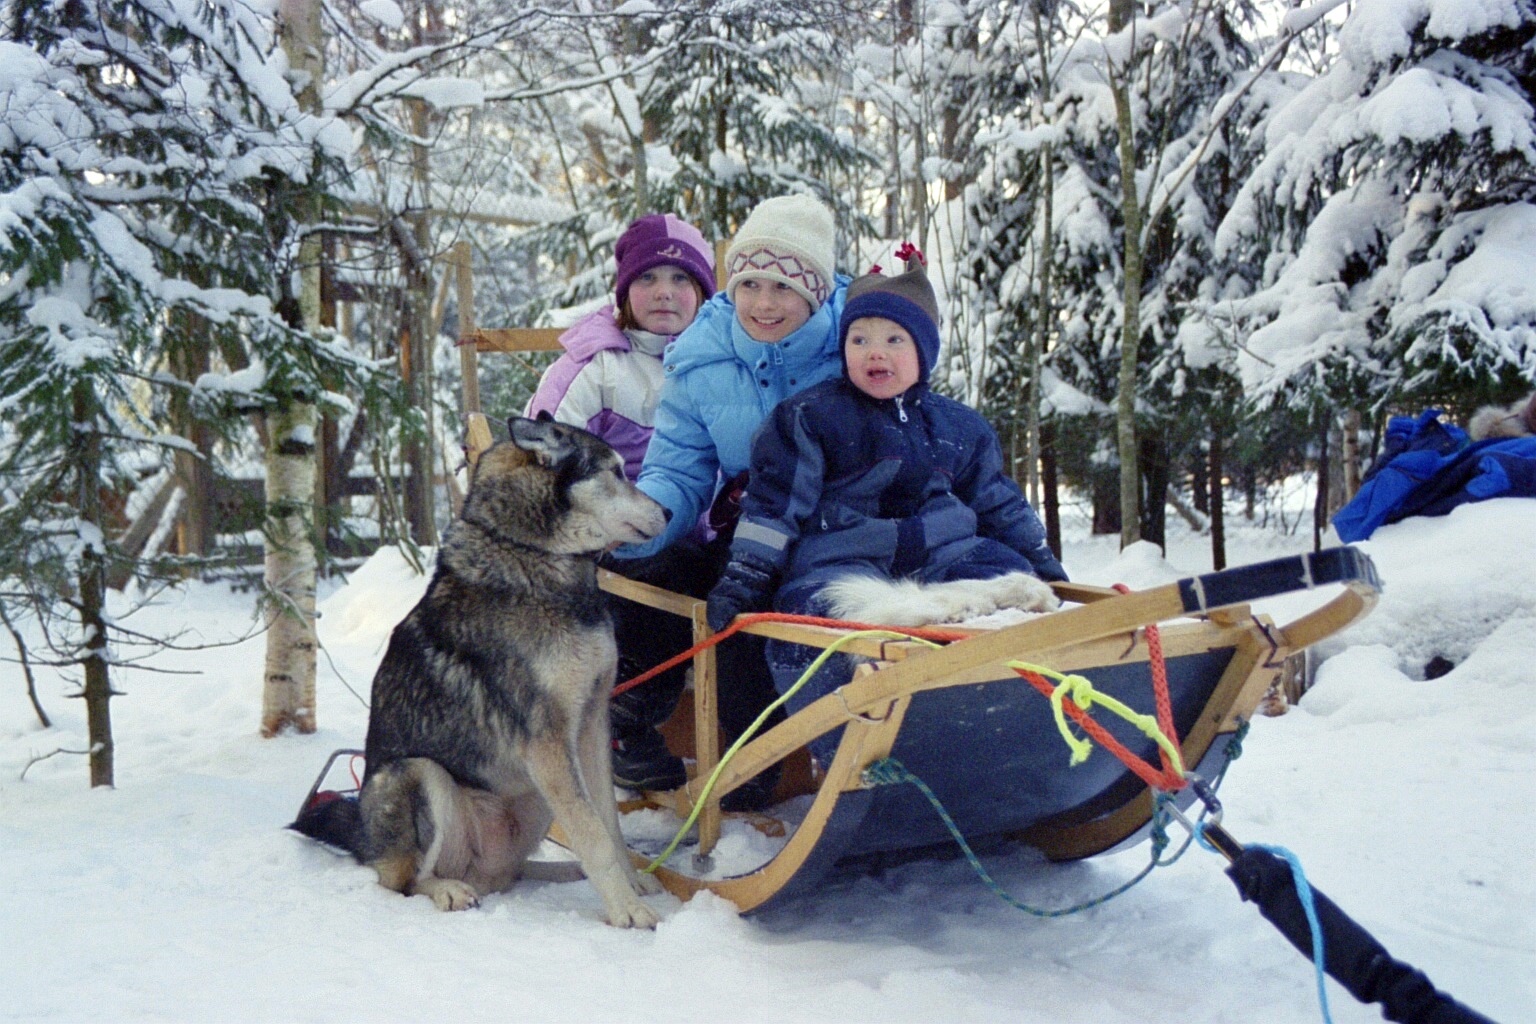 Lääääänge sen, Jag och min lillebror vintern 2004/2005